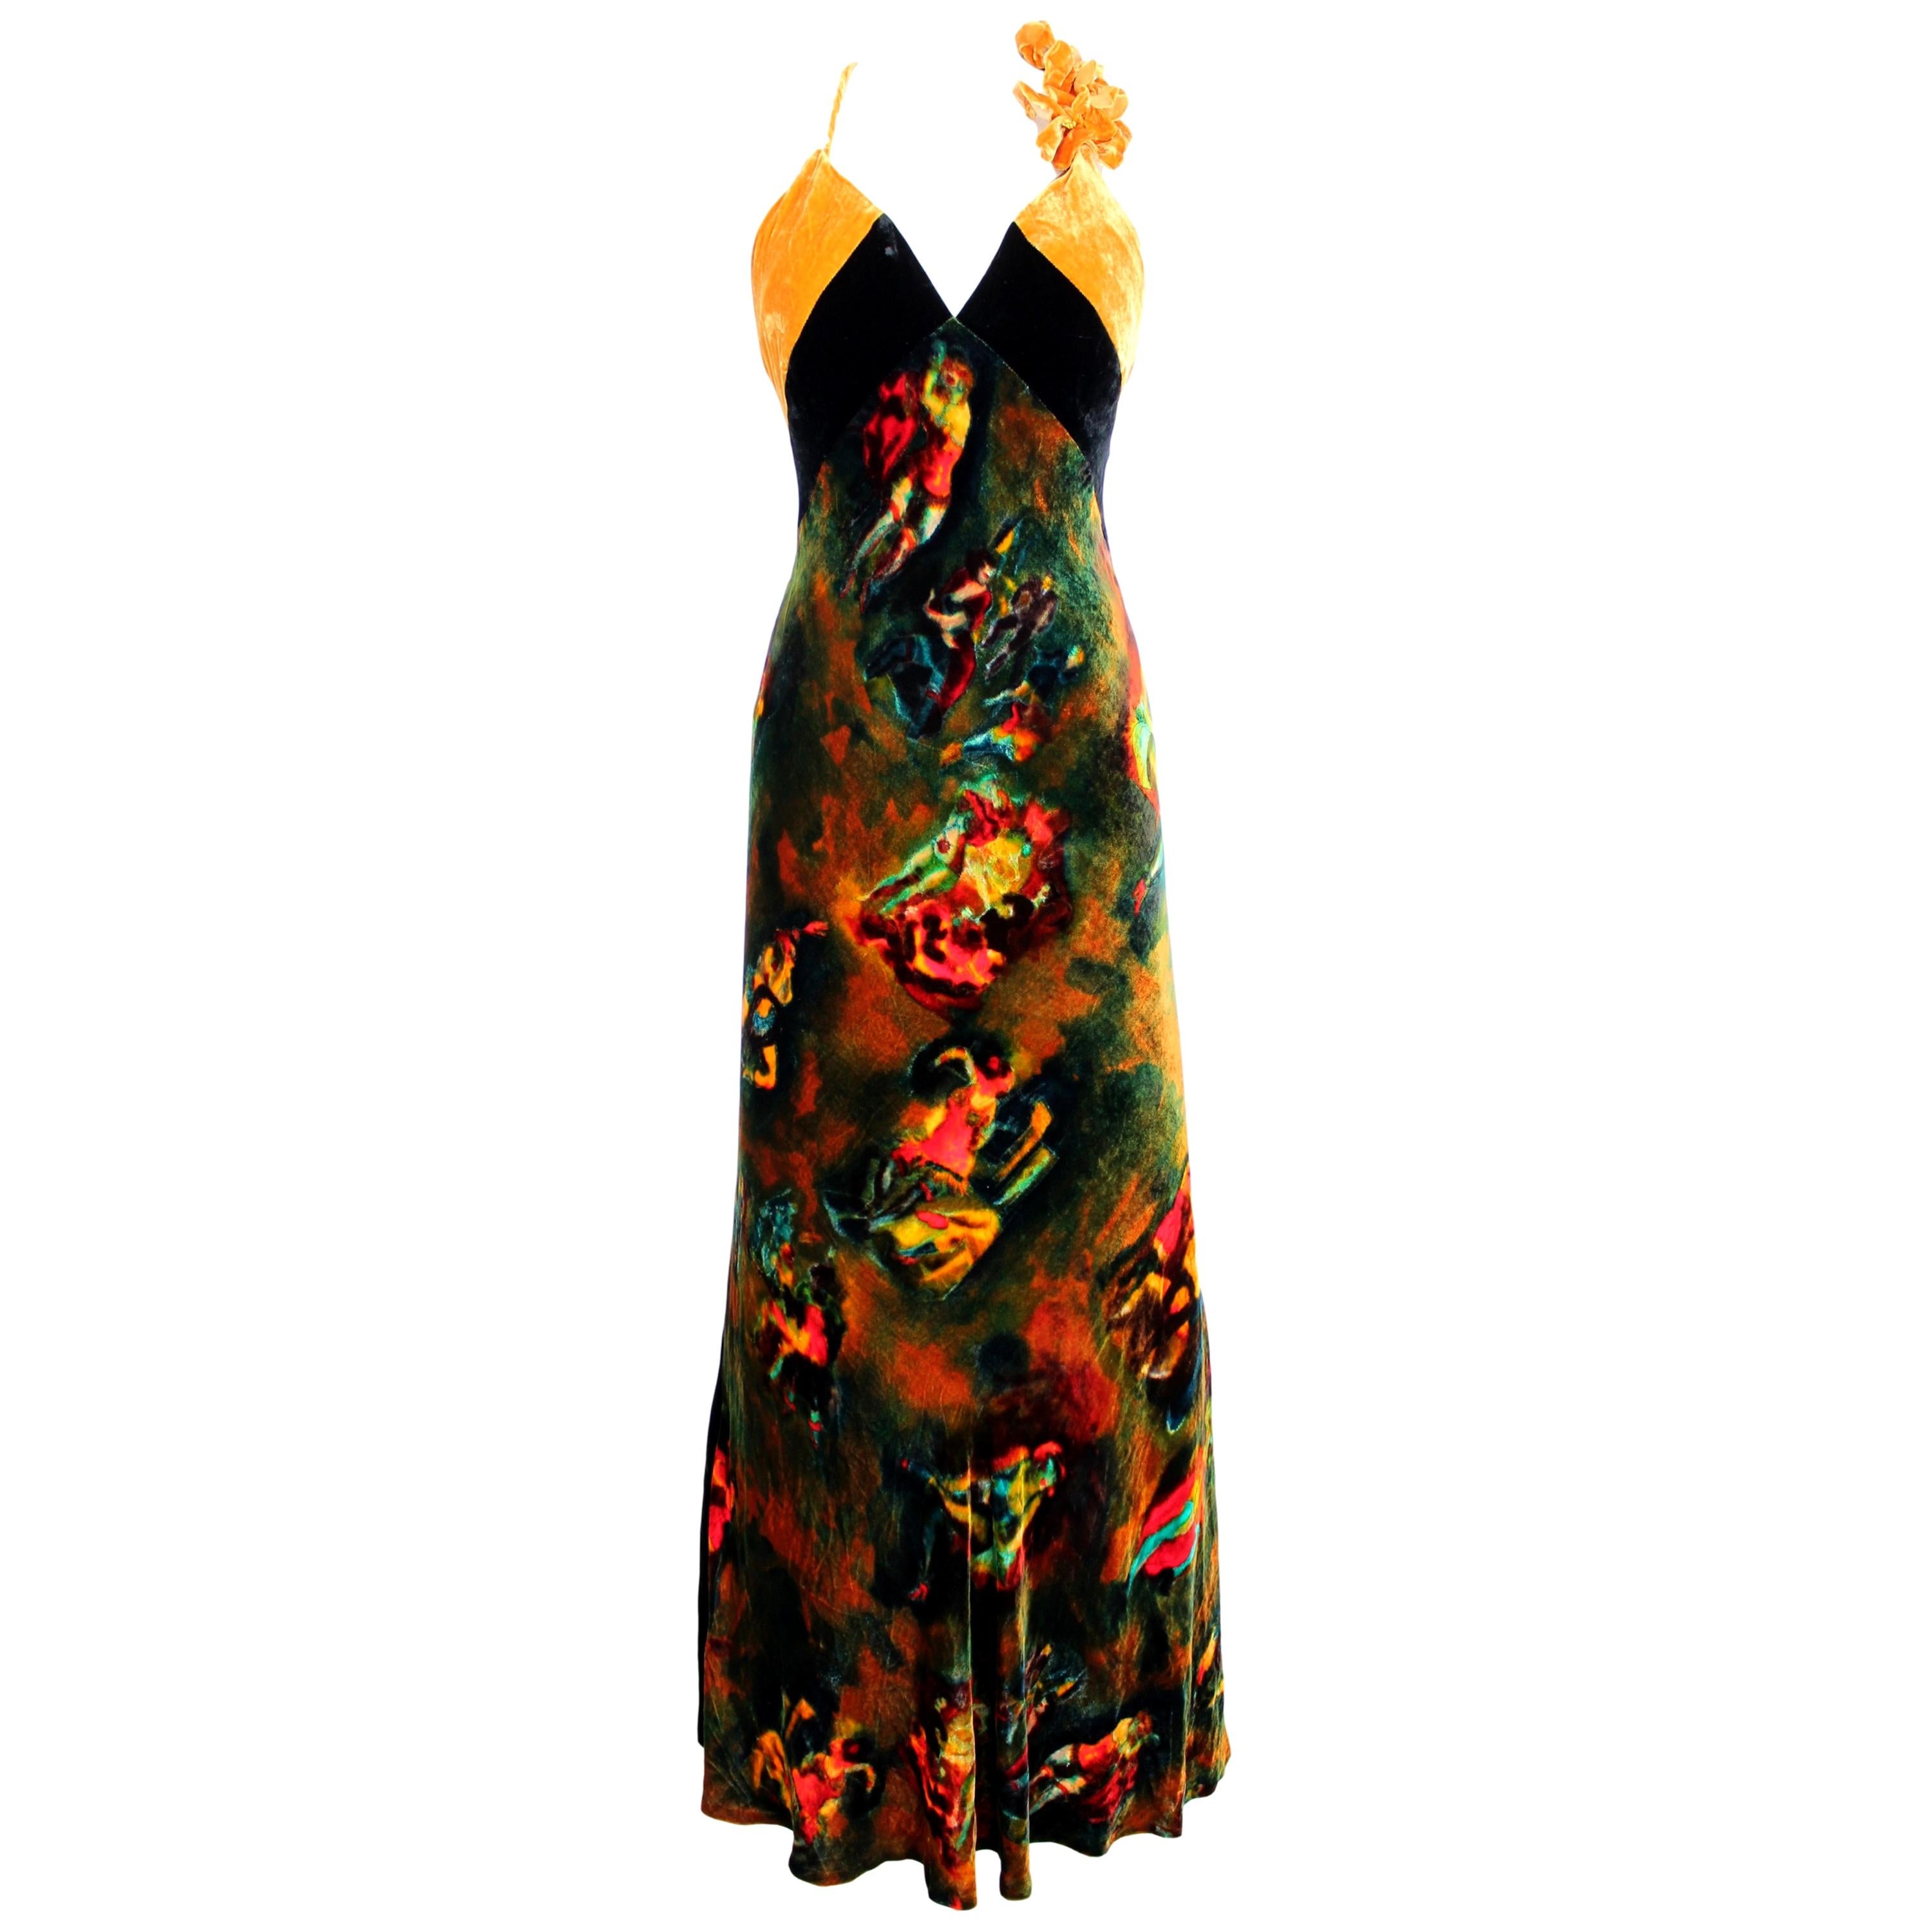 Robe de femme Jean Paul Gaultier Femme vintage des années 2000. Robe de soirée longue, ajustée au corps avec une queue sur la longueur. Noir et jaune moutarde avec des motifs de femmes japonaises dans des couleurs irisées allant du vert au rouge.